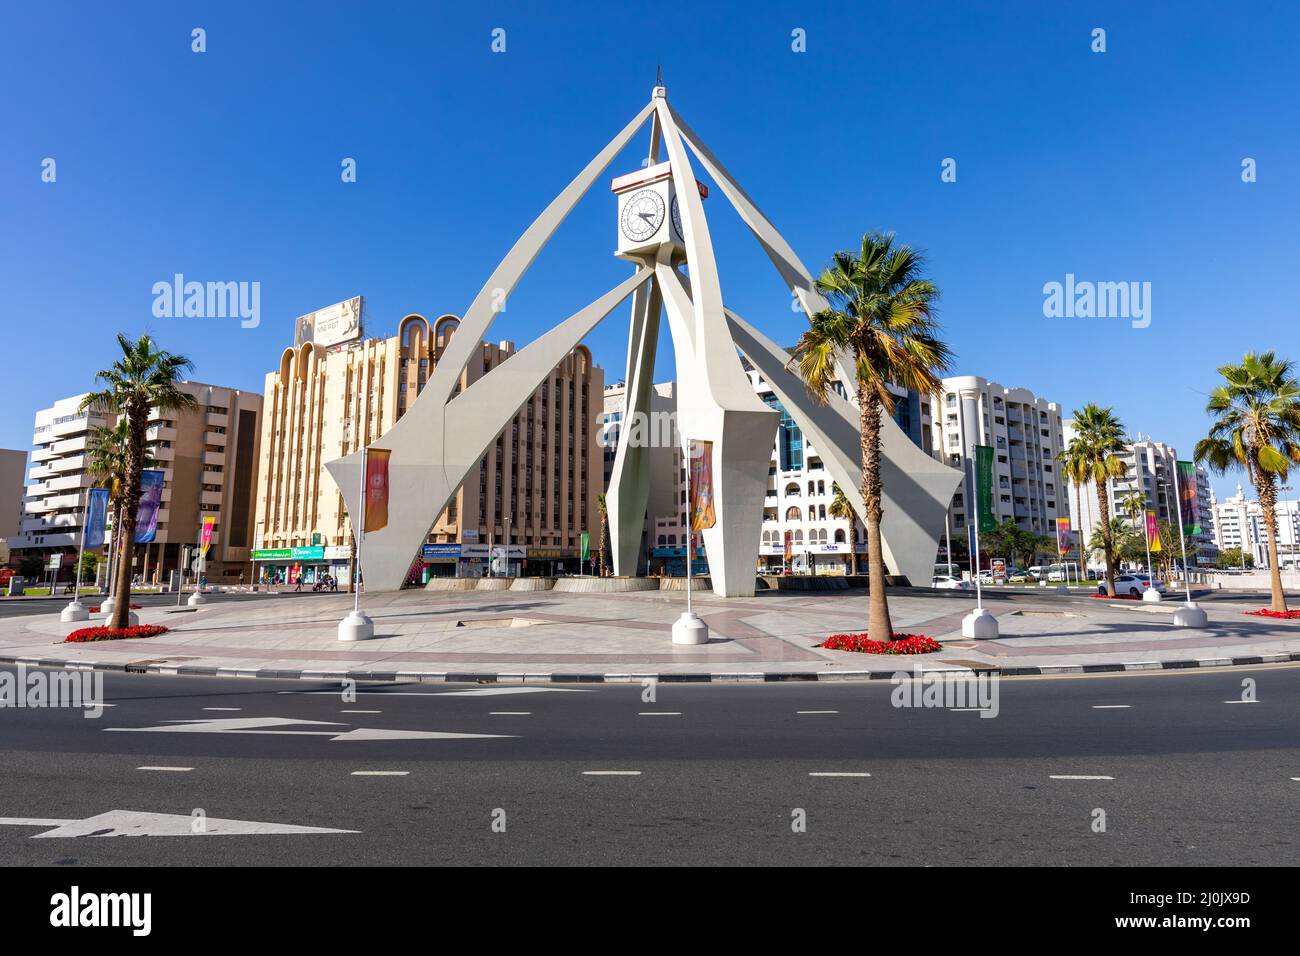 Deira horloge tour rond-point, un vieux point de repère de Dubaï construit en 1965. Émirats arabes Unis. Moyen-Orient. Banque D'Images